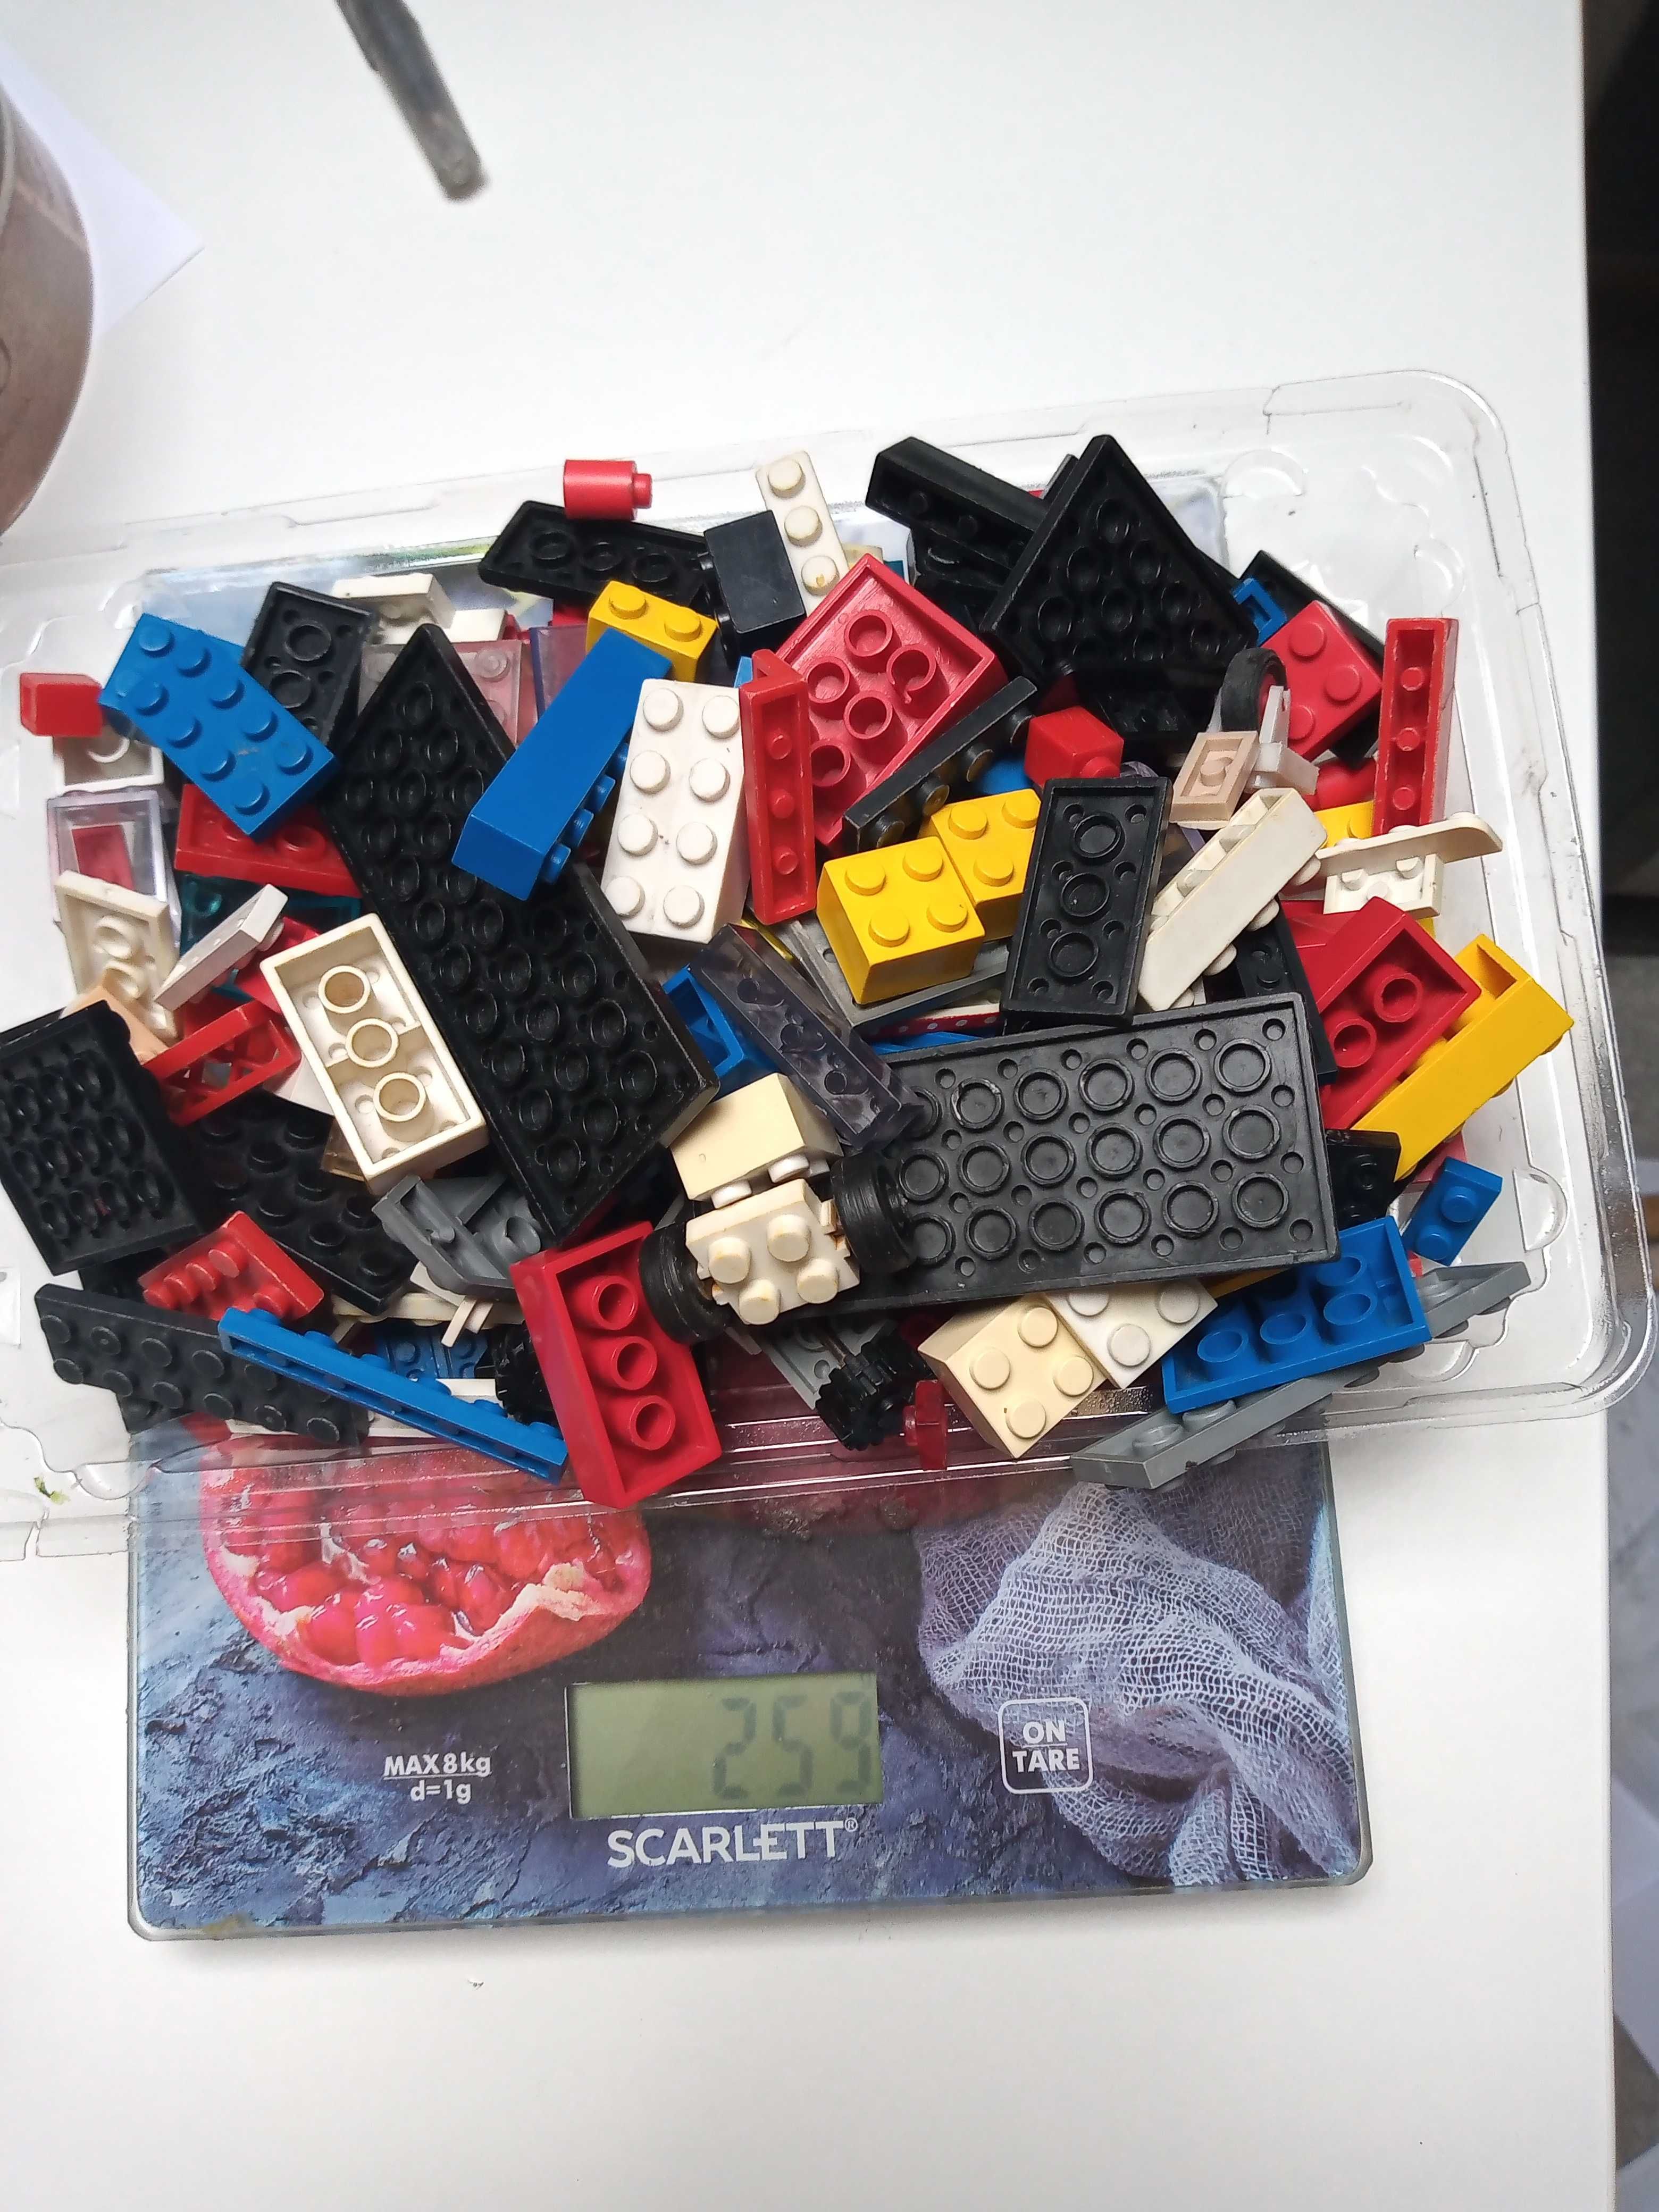 mix klocków: kompatybilnych z Lego ok 0,5 kg i 0,11 kg Lego